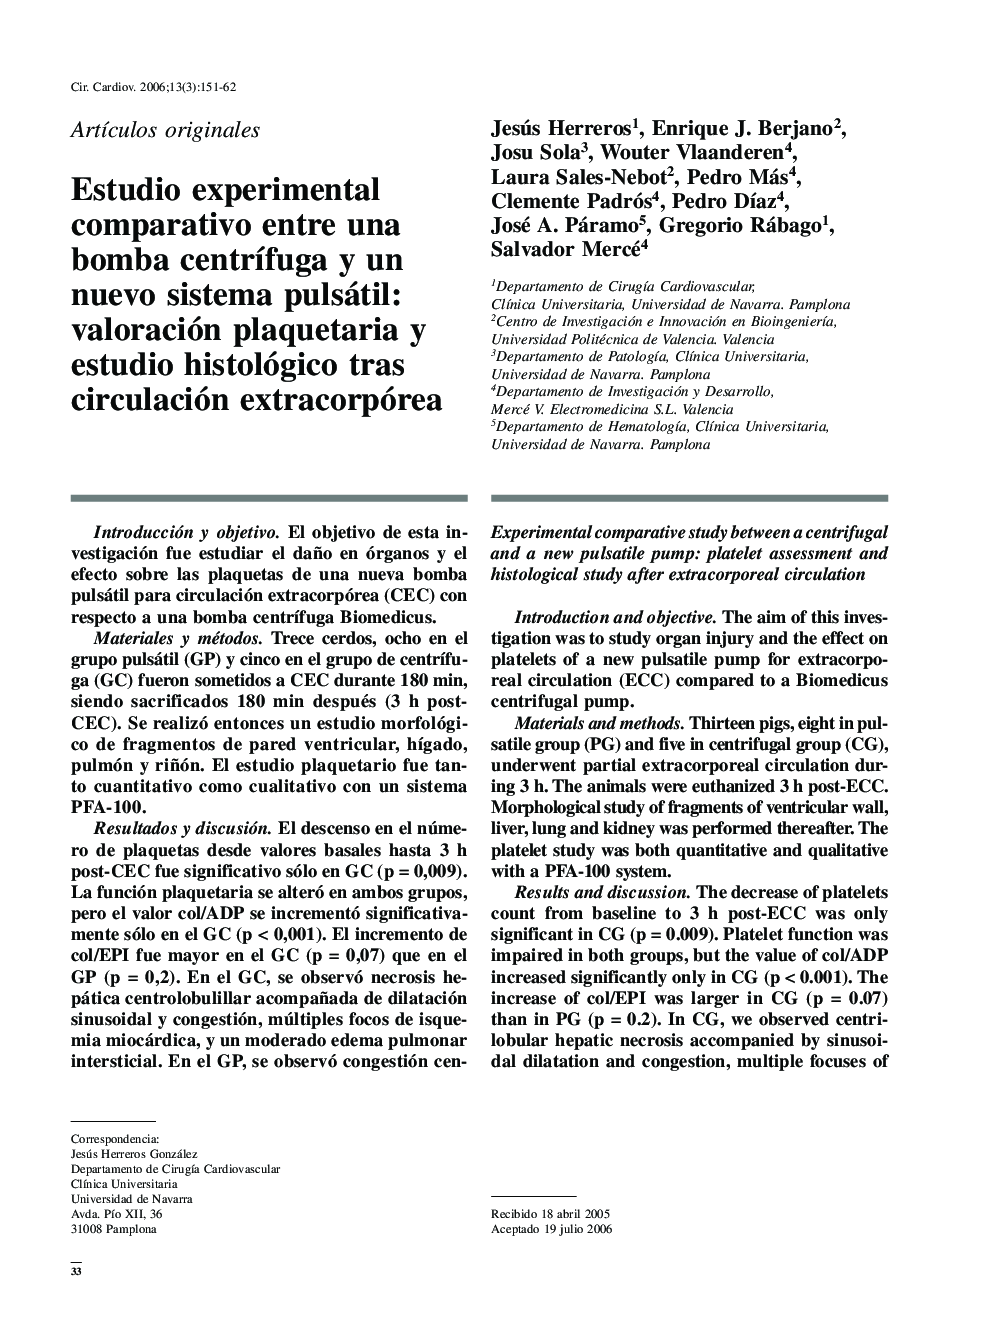 Estudio experimental comparativo entre una bomba centrífuga y un nuevo sistema pulsátil: valoración plaquetaria y estudio histológico tras circulación extracorpórea